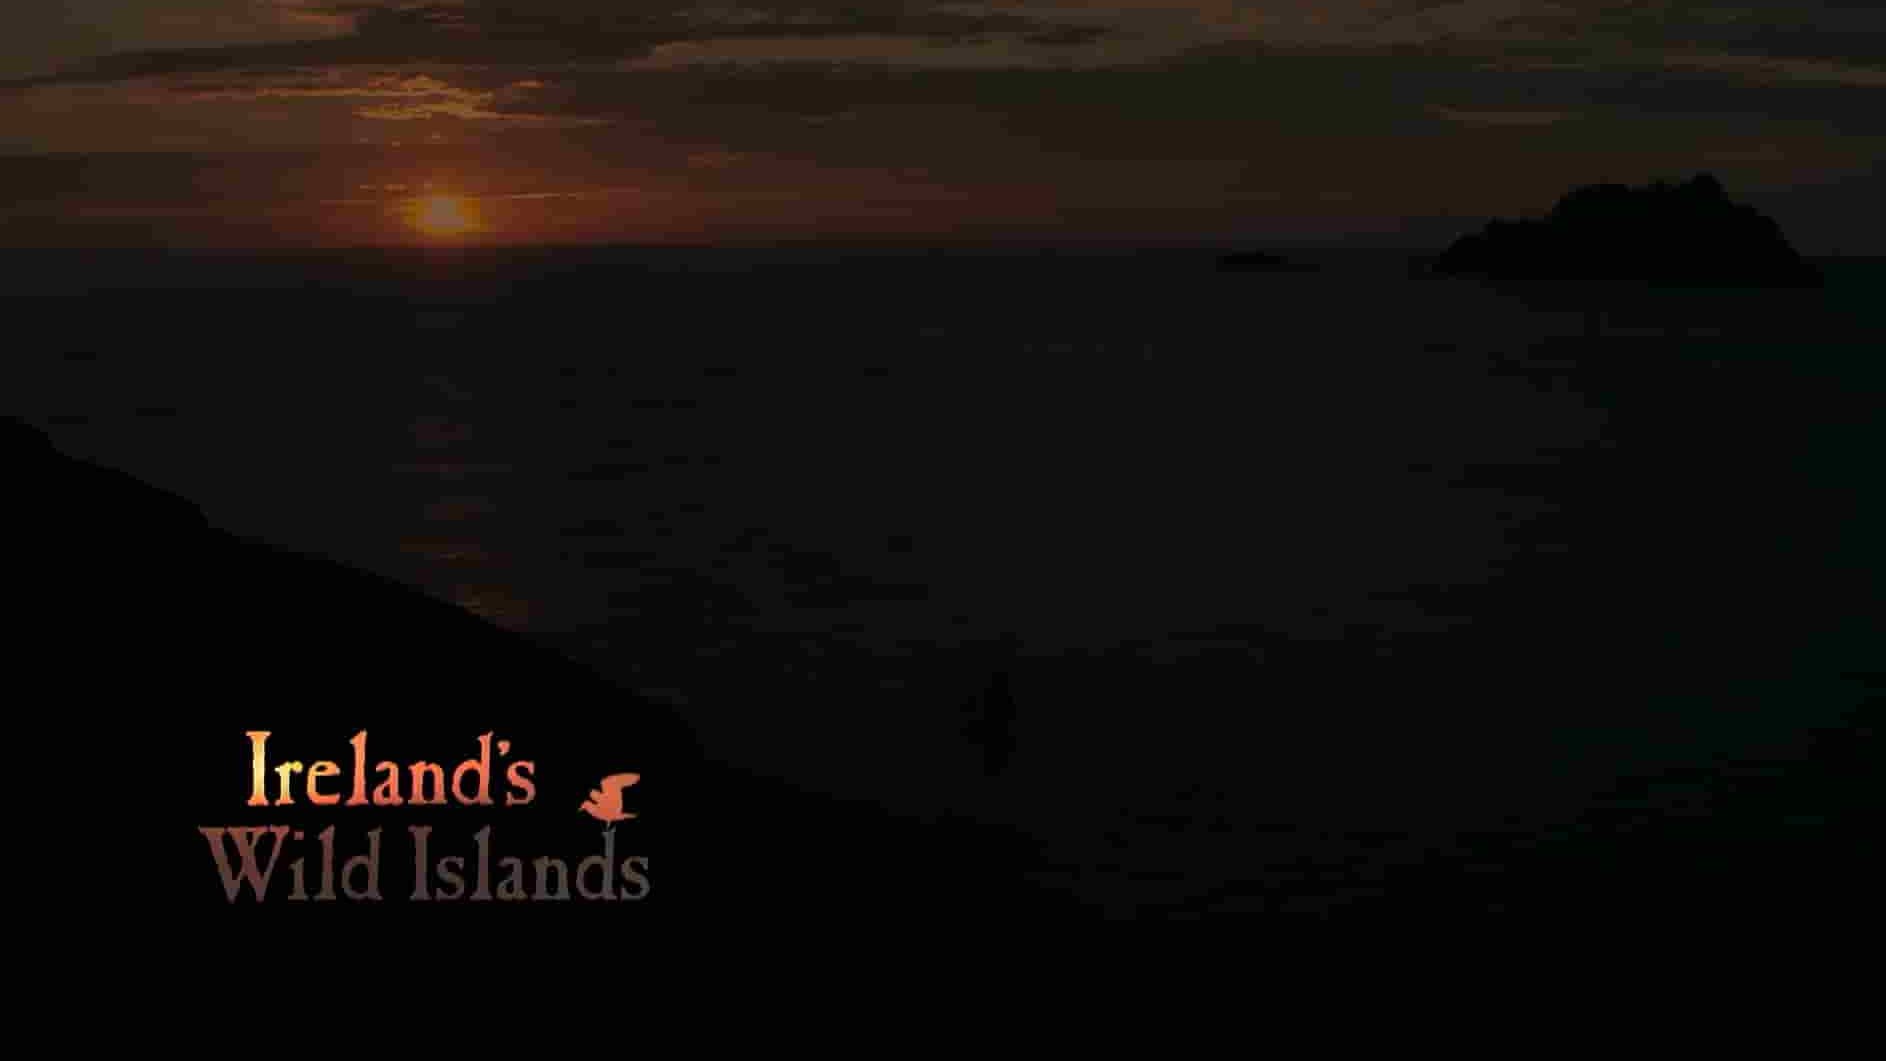 Arte纪录片《爱尔兰荒野岛屿/爱尔兰的野生群岛 Ireland